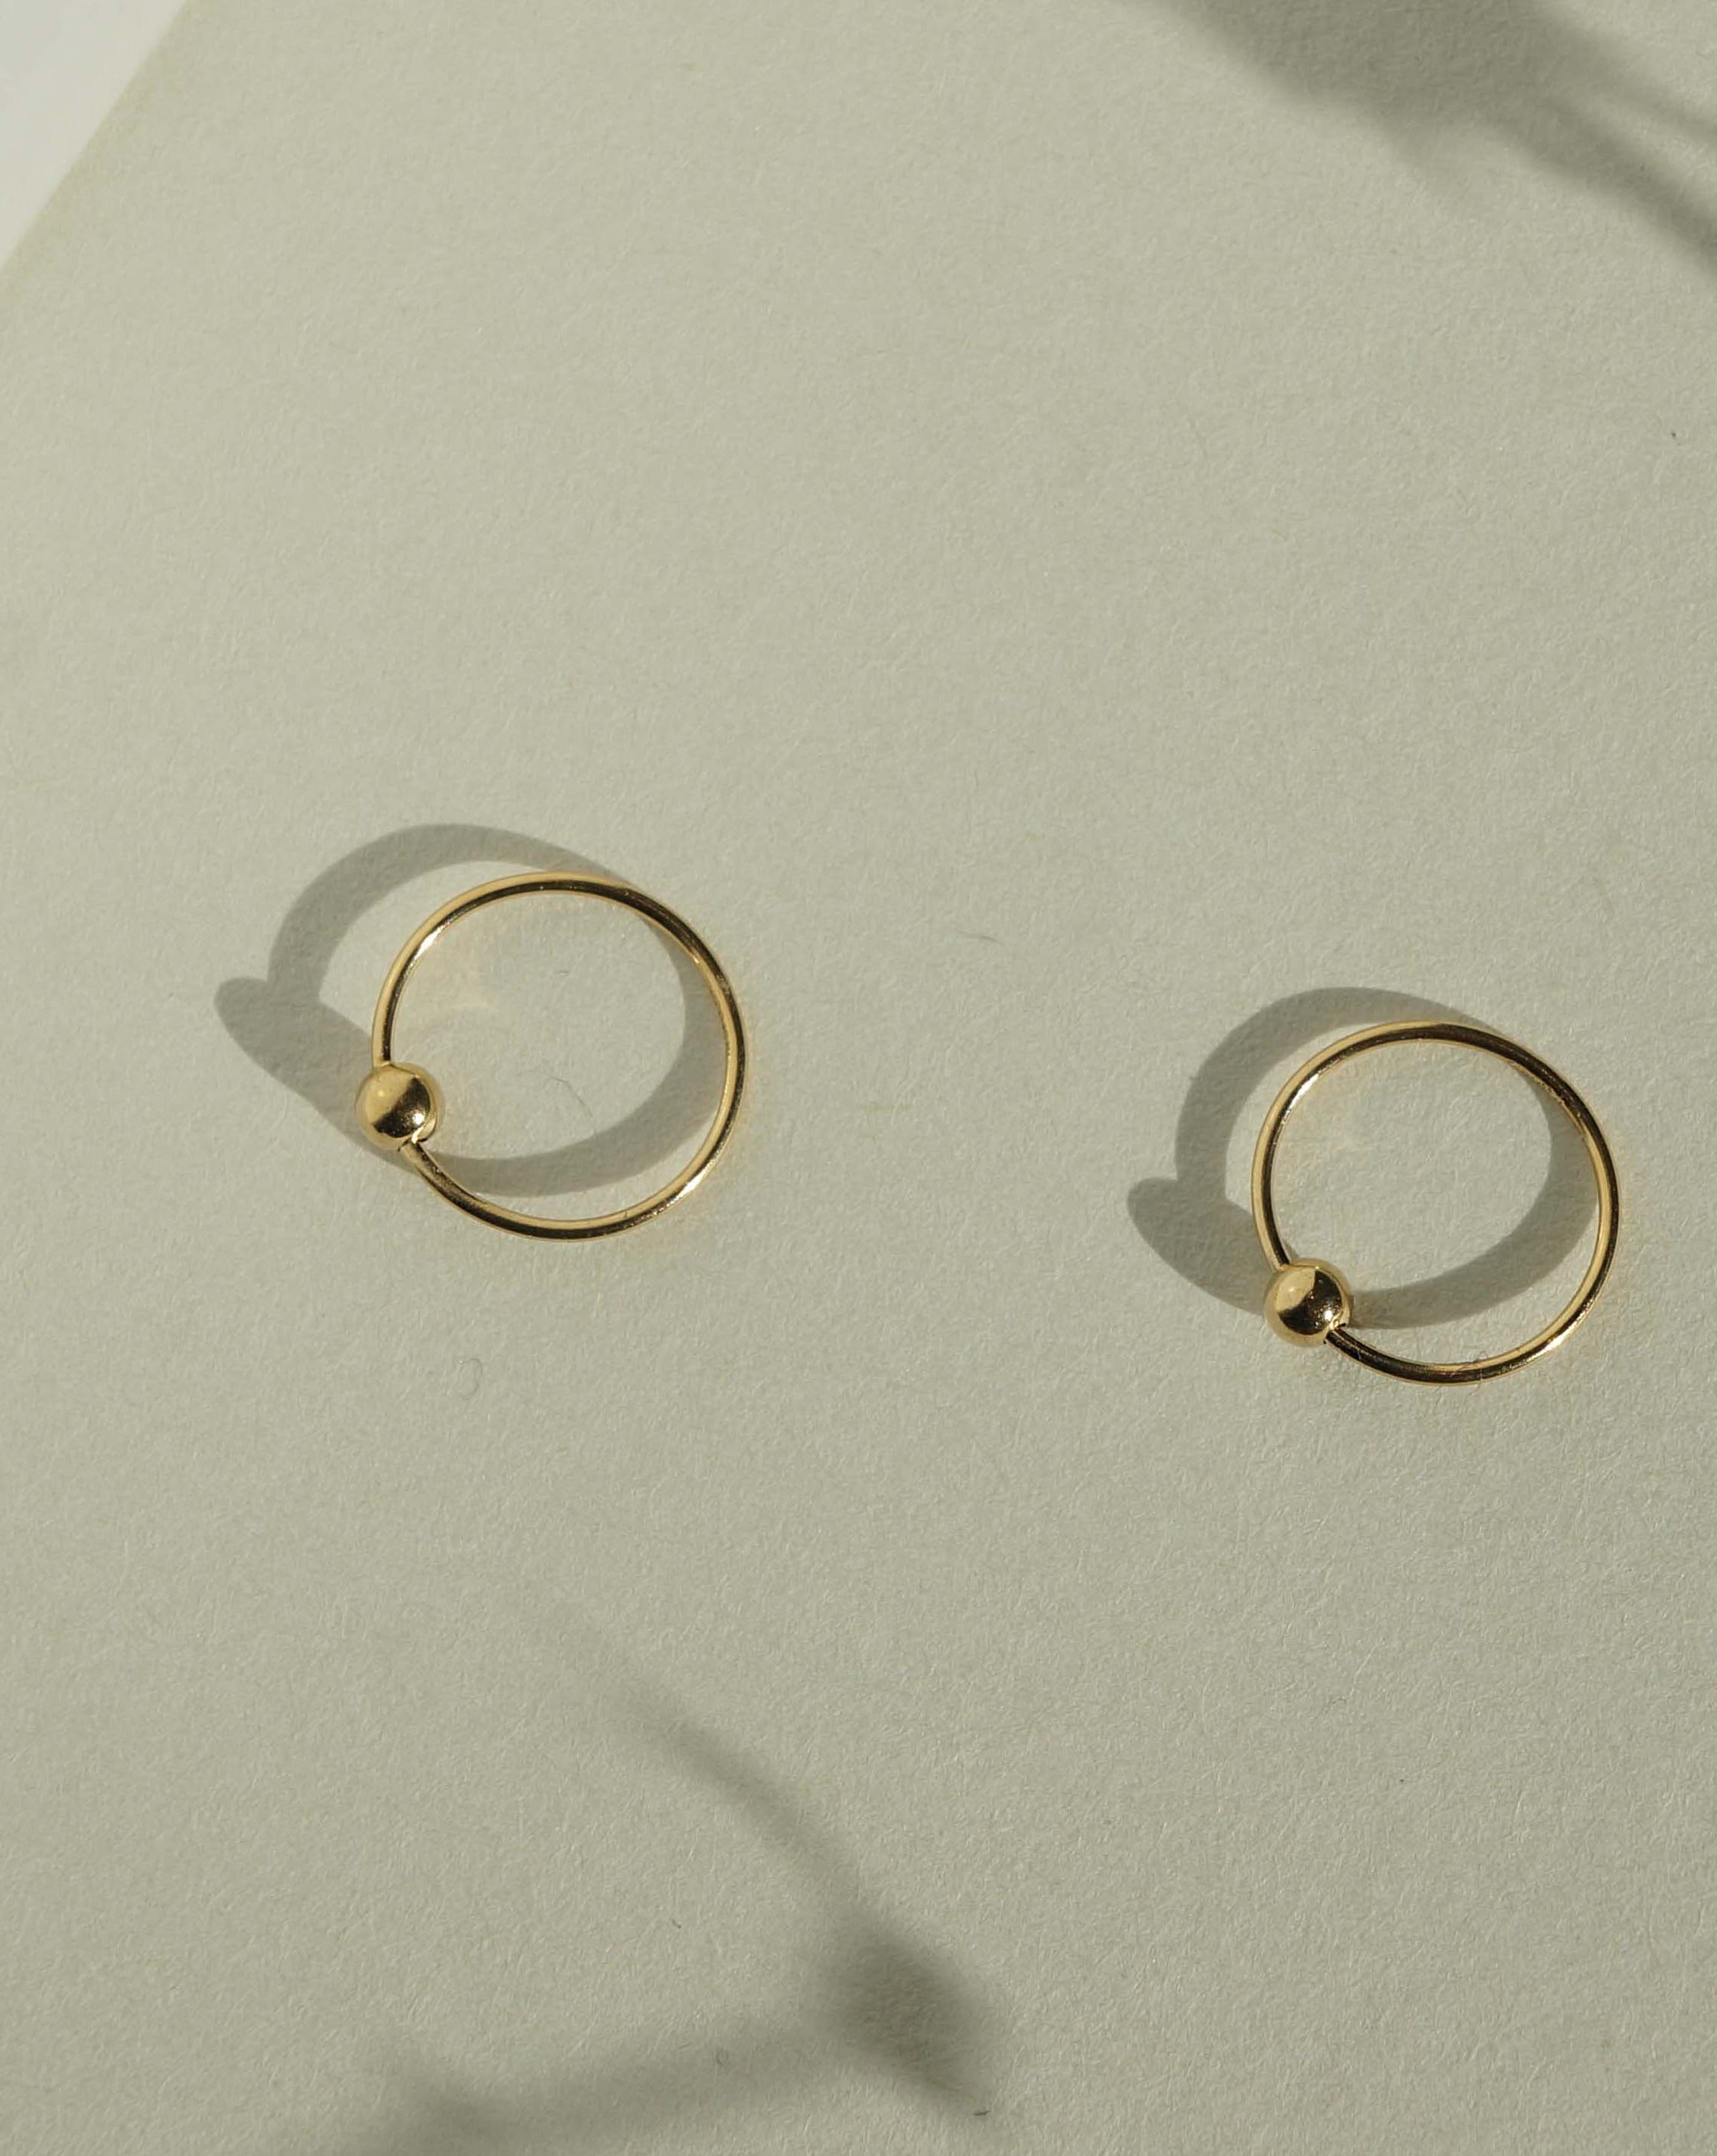 Harlie Hoop Earrings by KOZAKH. 12mm snap hoop earrings, crafted in 14K Gold Filled.